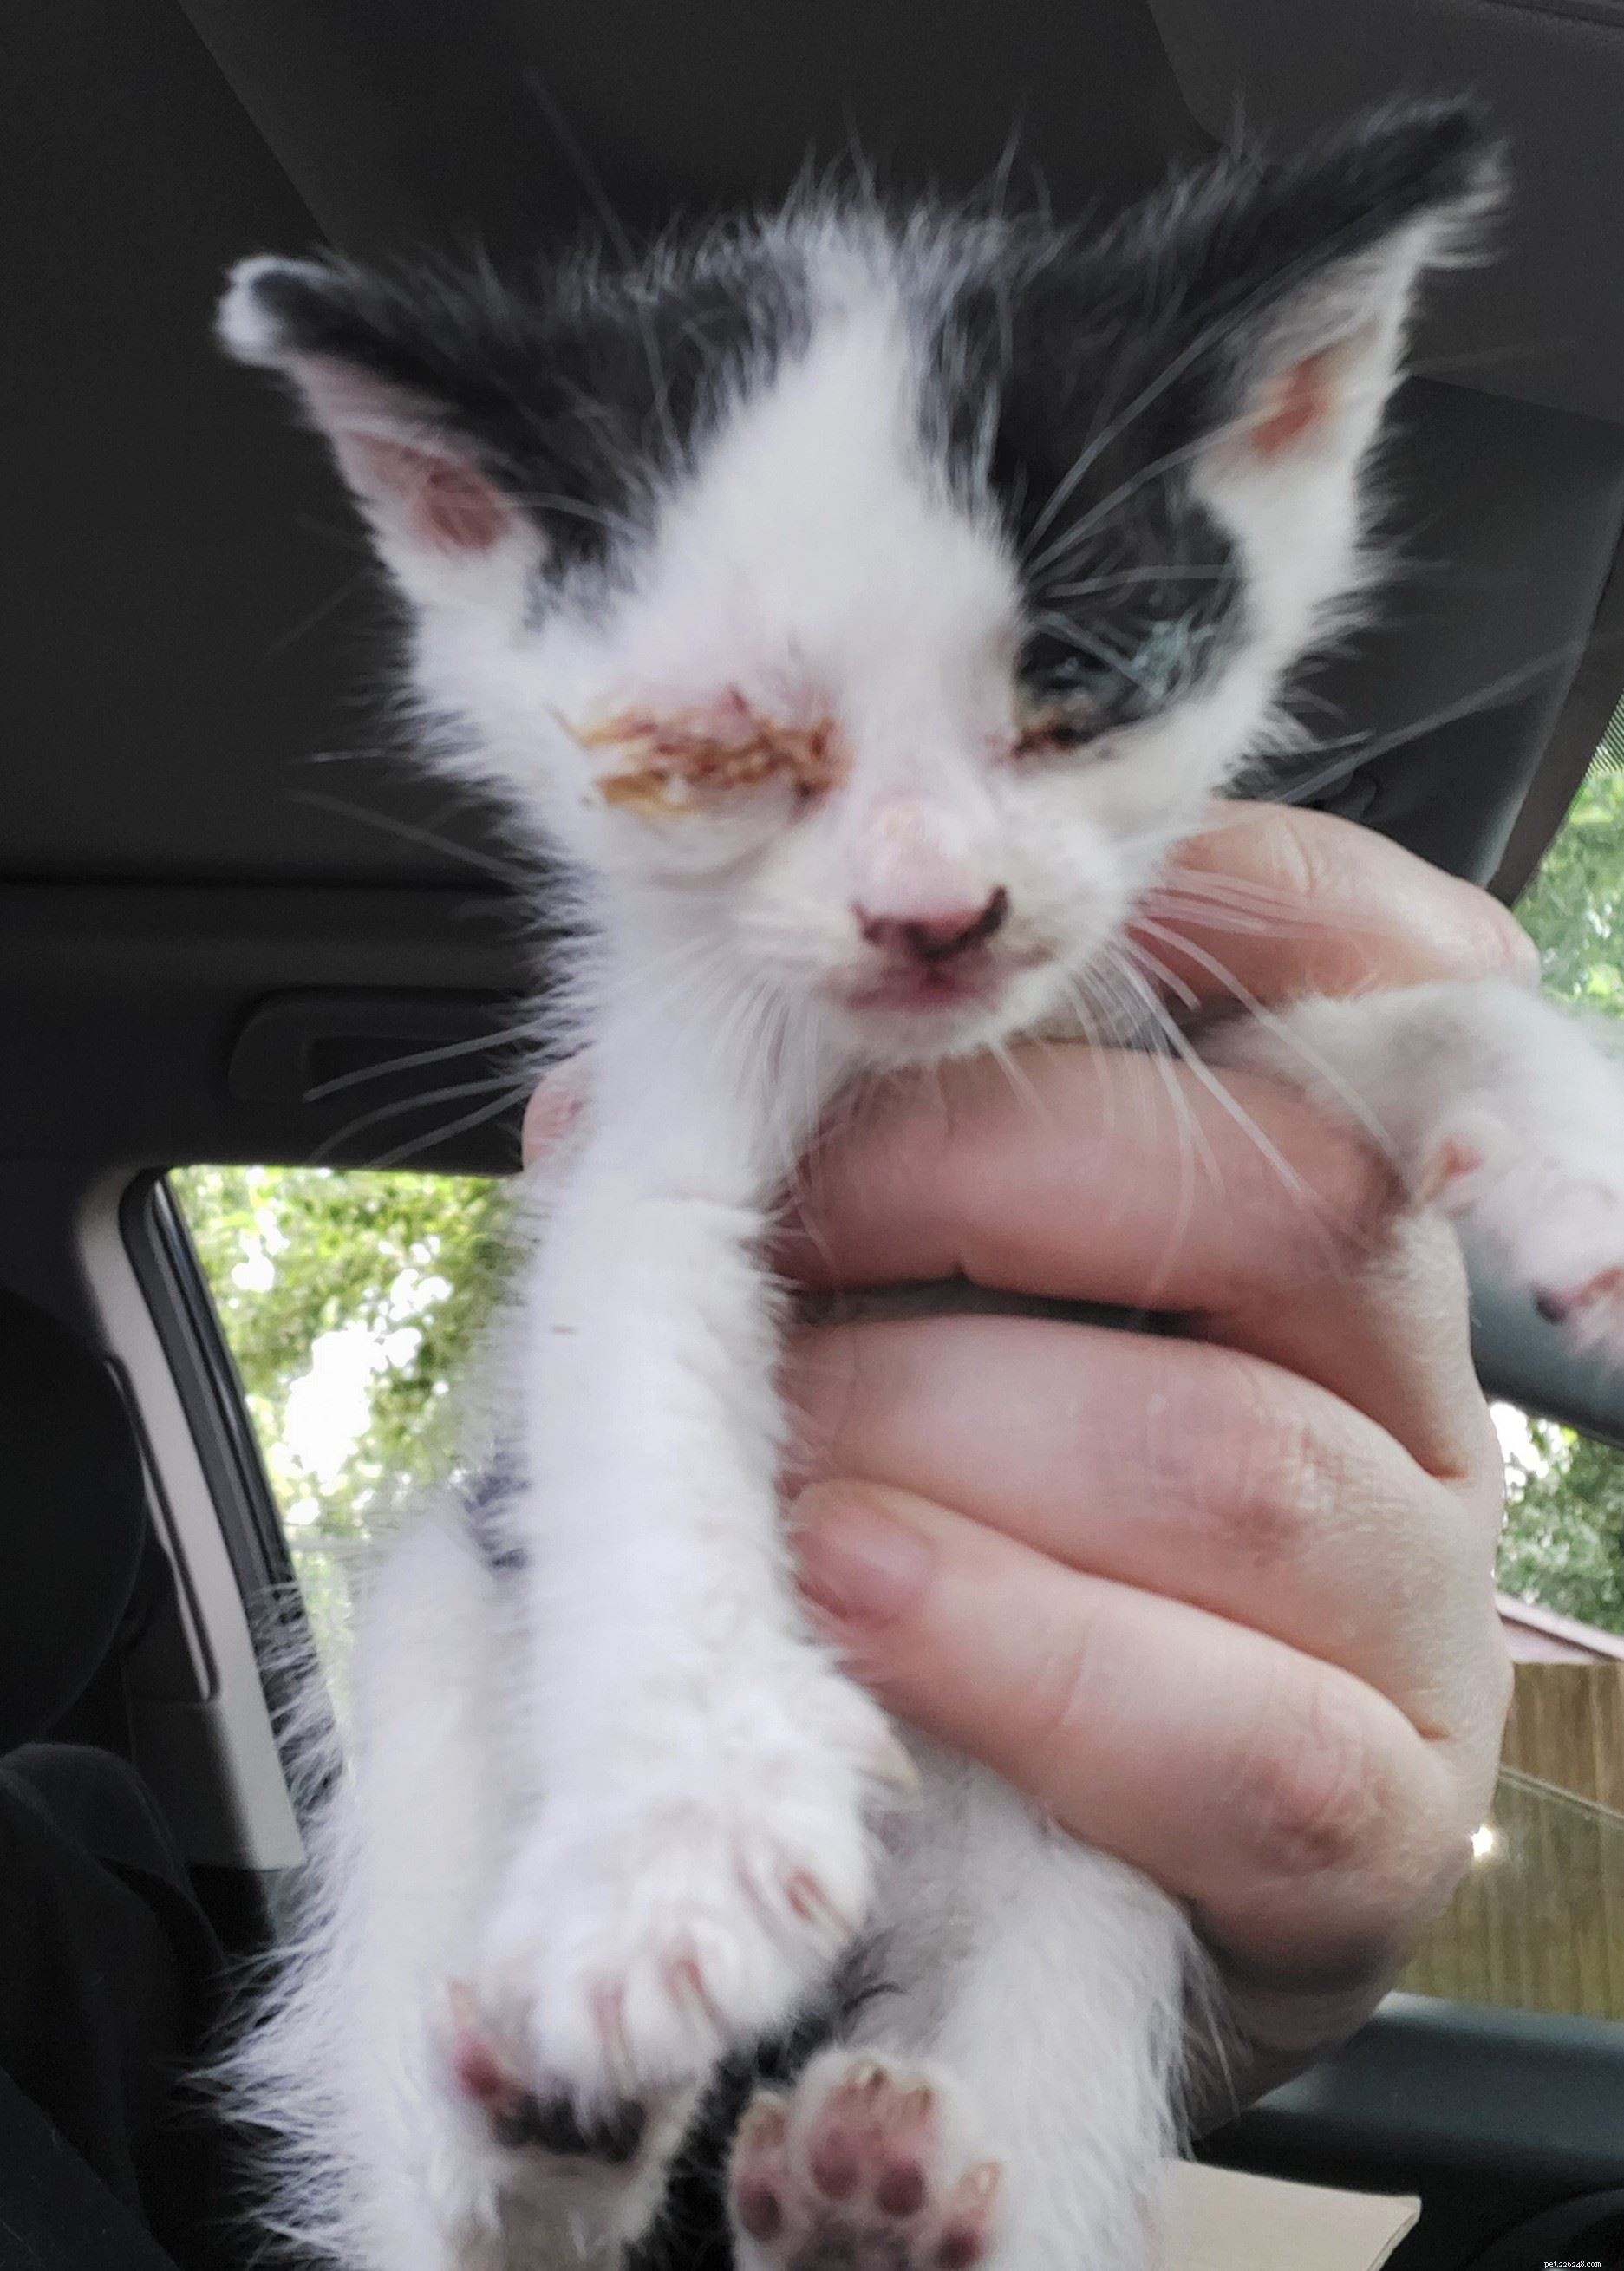 ルーマニアから英国に約1週間旅行した後、ひどく脱水状態になった子猫が焼ける温度から救出されました